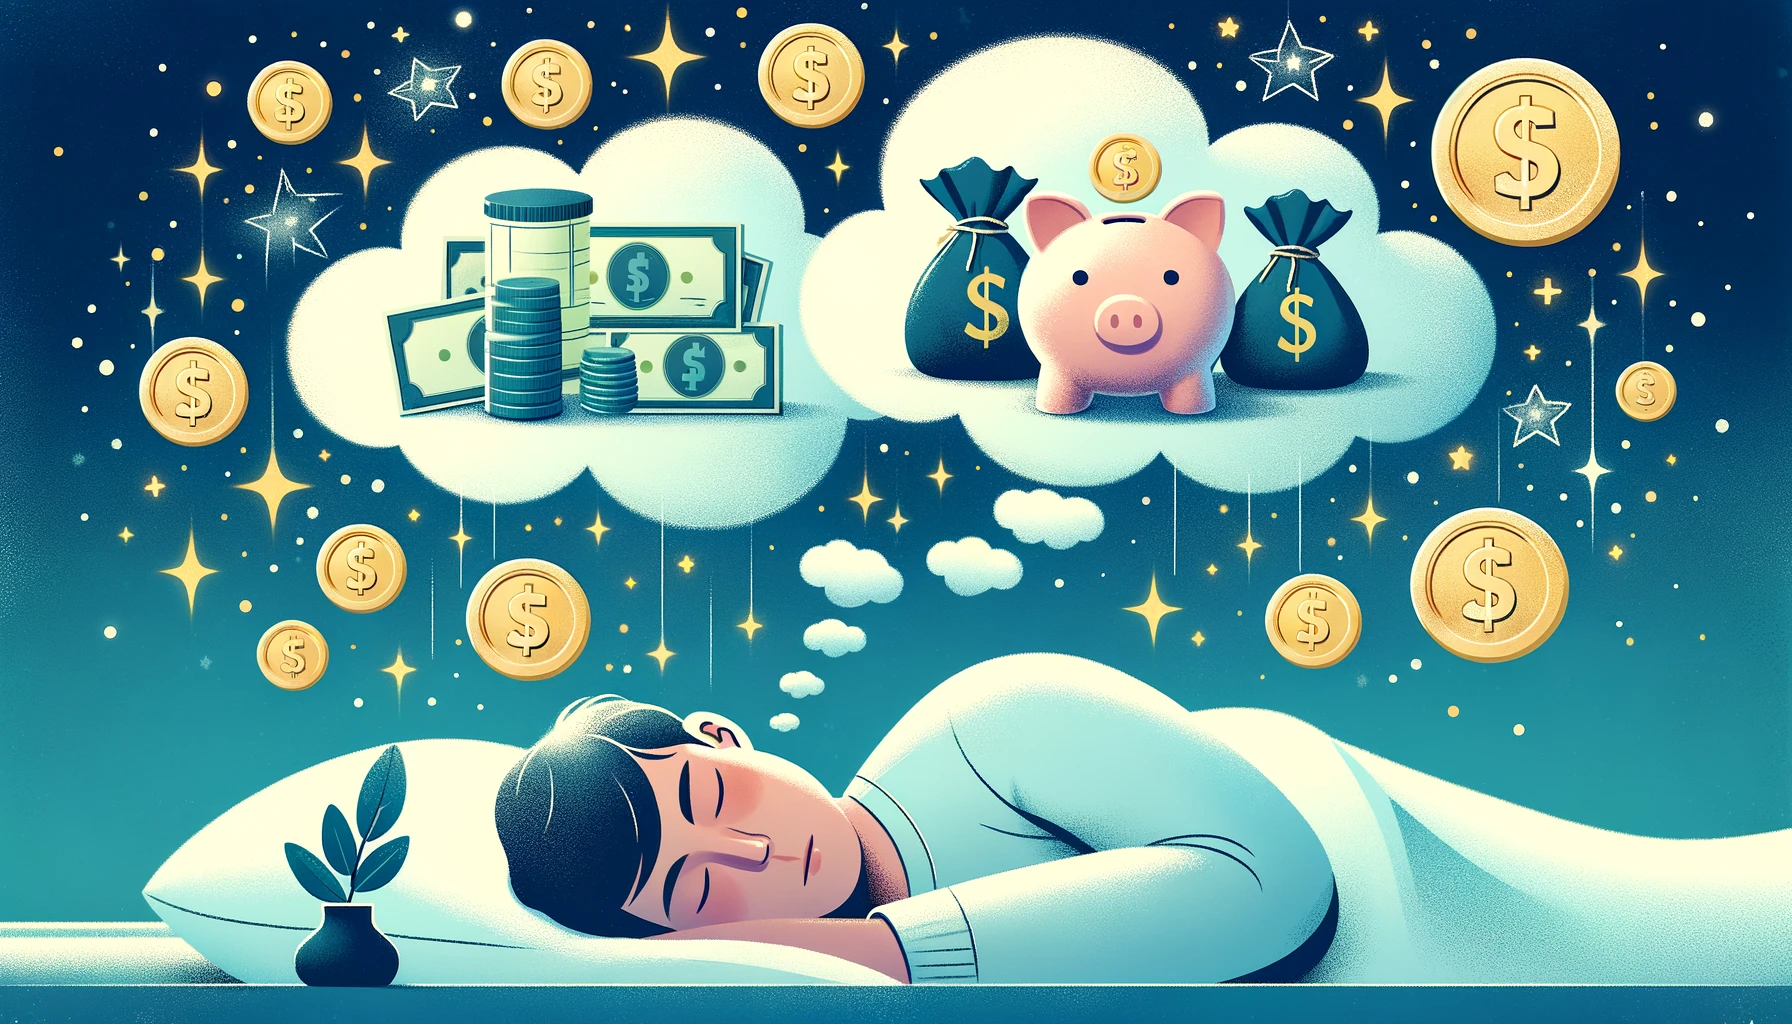 Eine horizontale Illustration zum Thema "Traumdeutung Geld: Wie Träume deine Finanzen widerspiegeln". Das Bild zeigt eine schlafende Person mit einer Traumwolke über dem Kopf, in der Symbole für Finanzen wie Münzen, Geldscheine und Sparschweine erscheinen. Der Hintergrund ist ein ruhiger, sternenklarer Nachthimmel mit einem subtilen Farbverlauf in Blau-, Weiß- und Goldtönen.